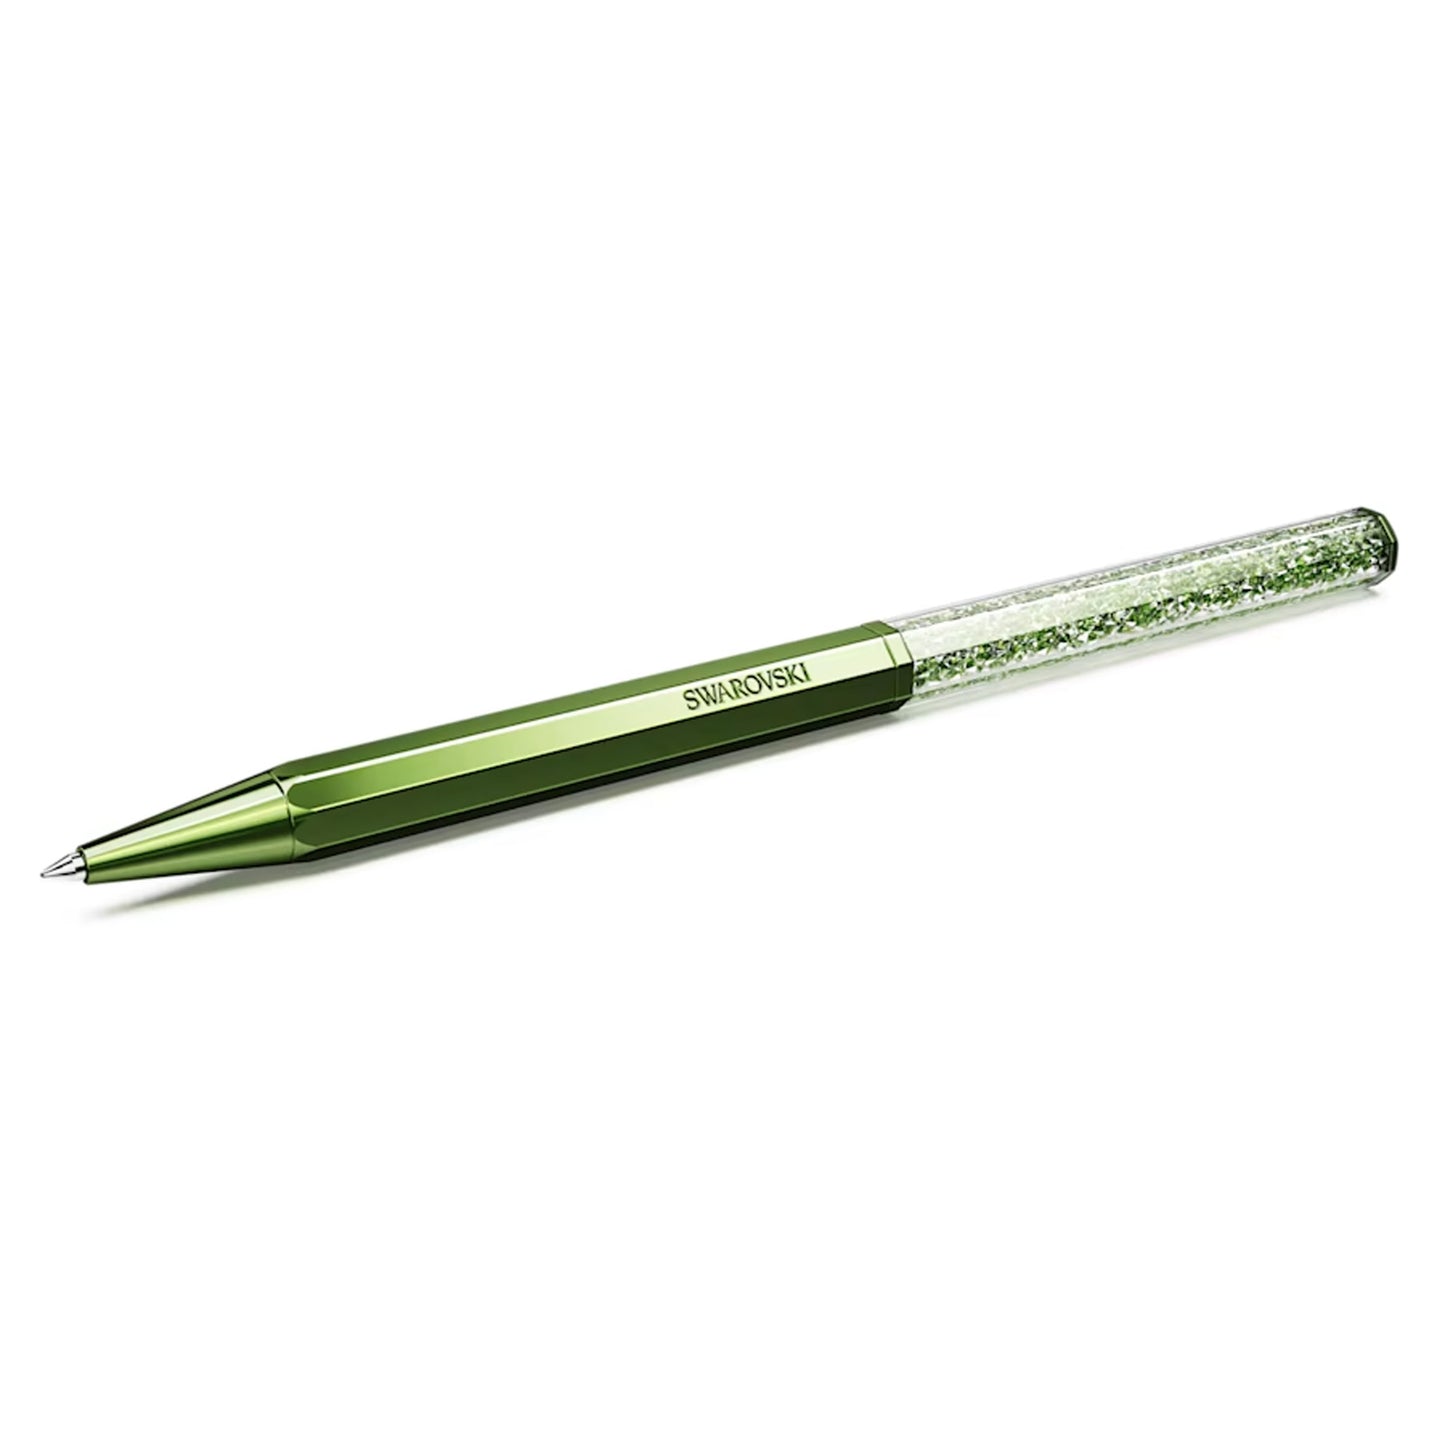 Crystalline ballpoint pen